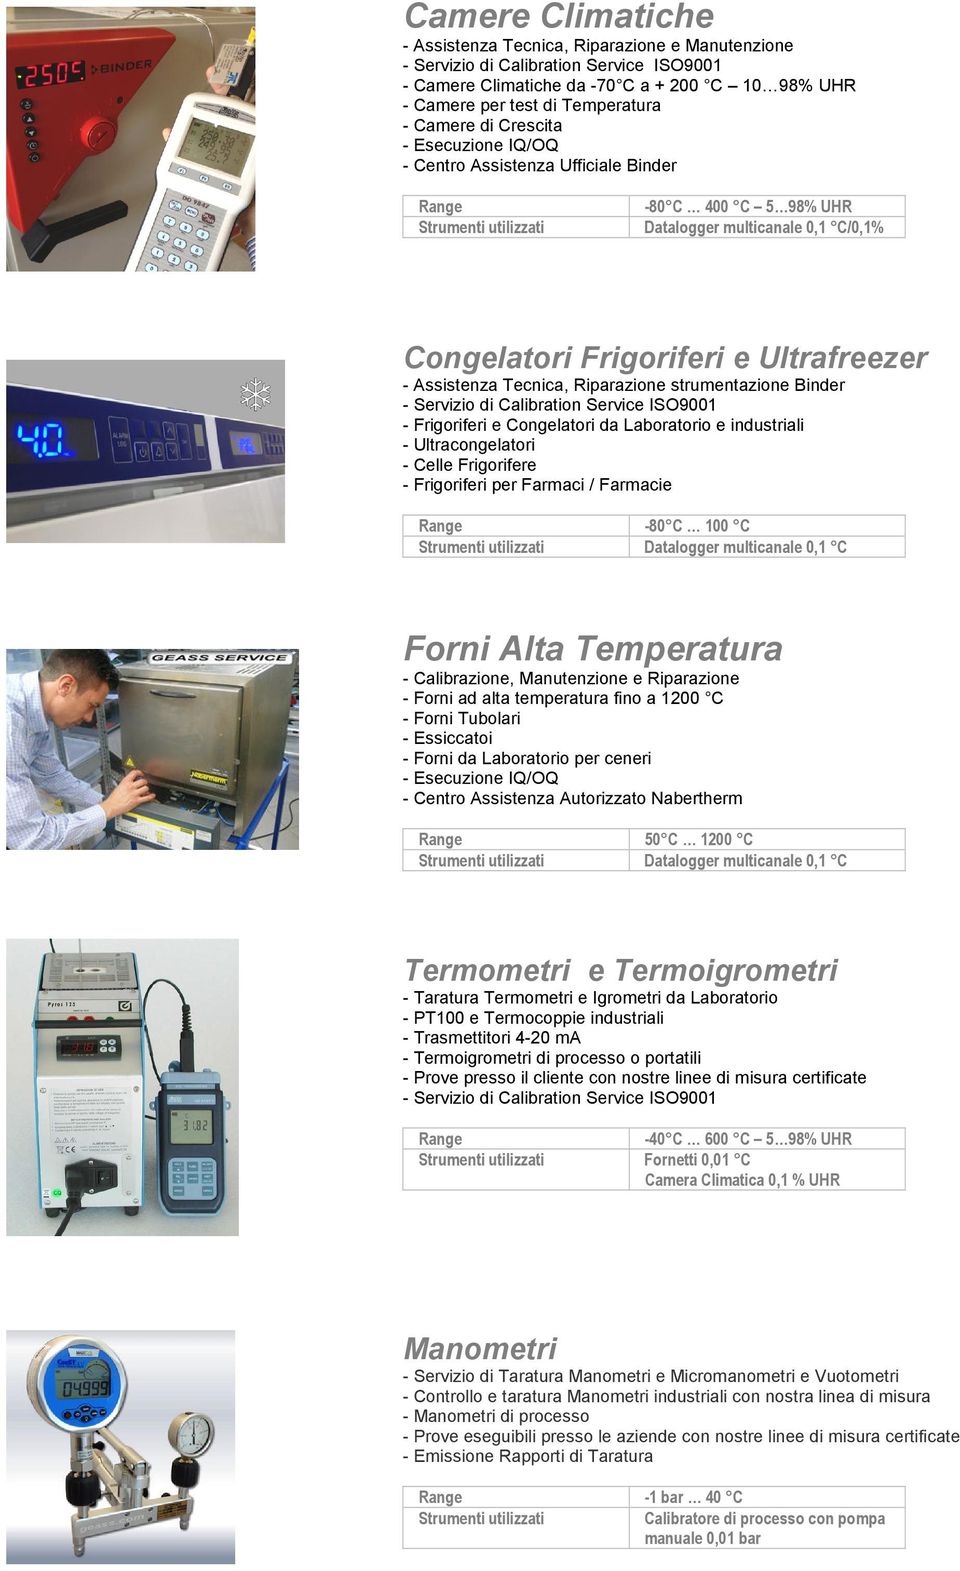 Congelatori da Laboratorio e industriali - Ultracongelatori - Celle Frigorifere - Frigoriferi per Farmaci / Farmacie -80 C 100 C Datalogger multicanale 0,1 C Forni Alta Temperatura - Calibrazione,